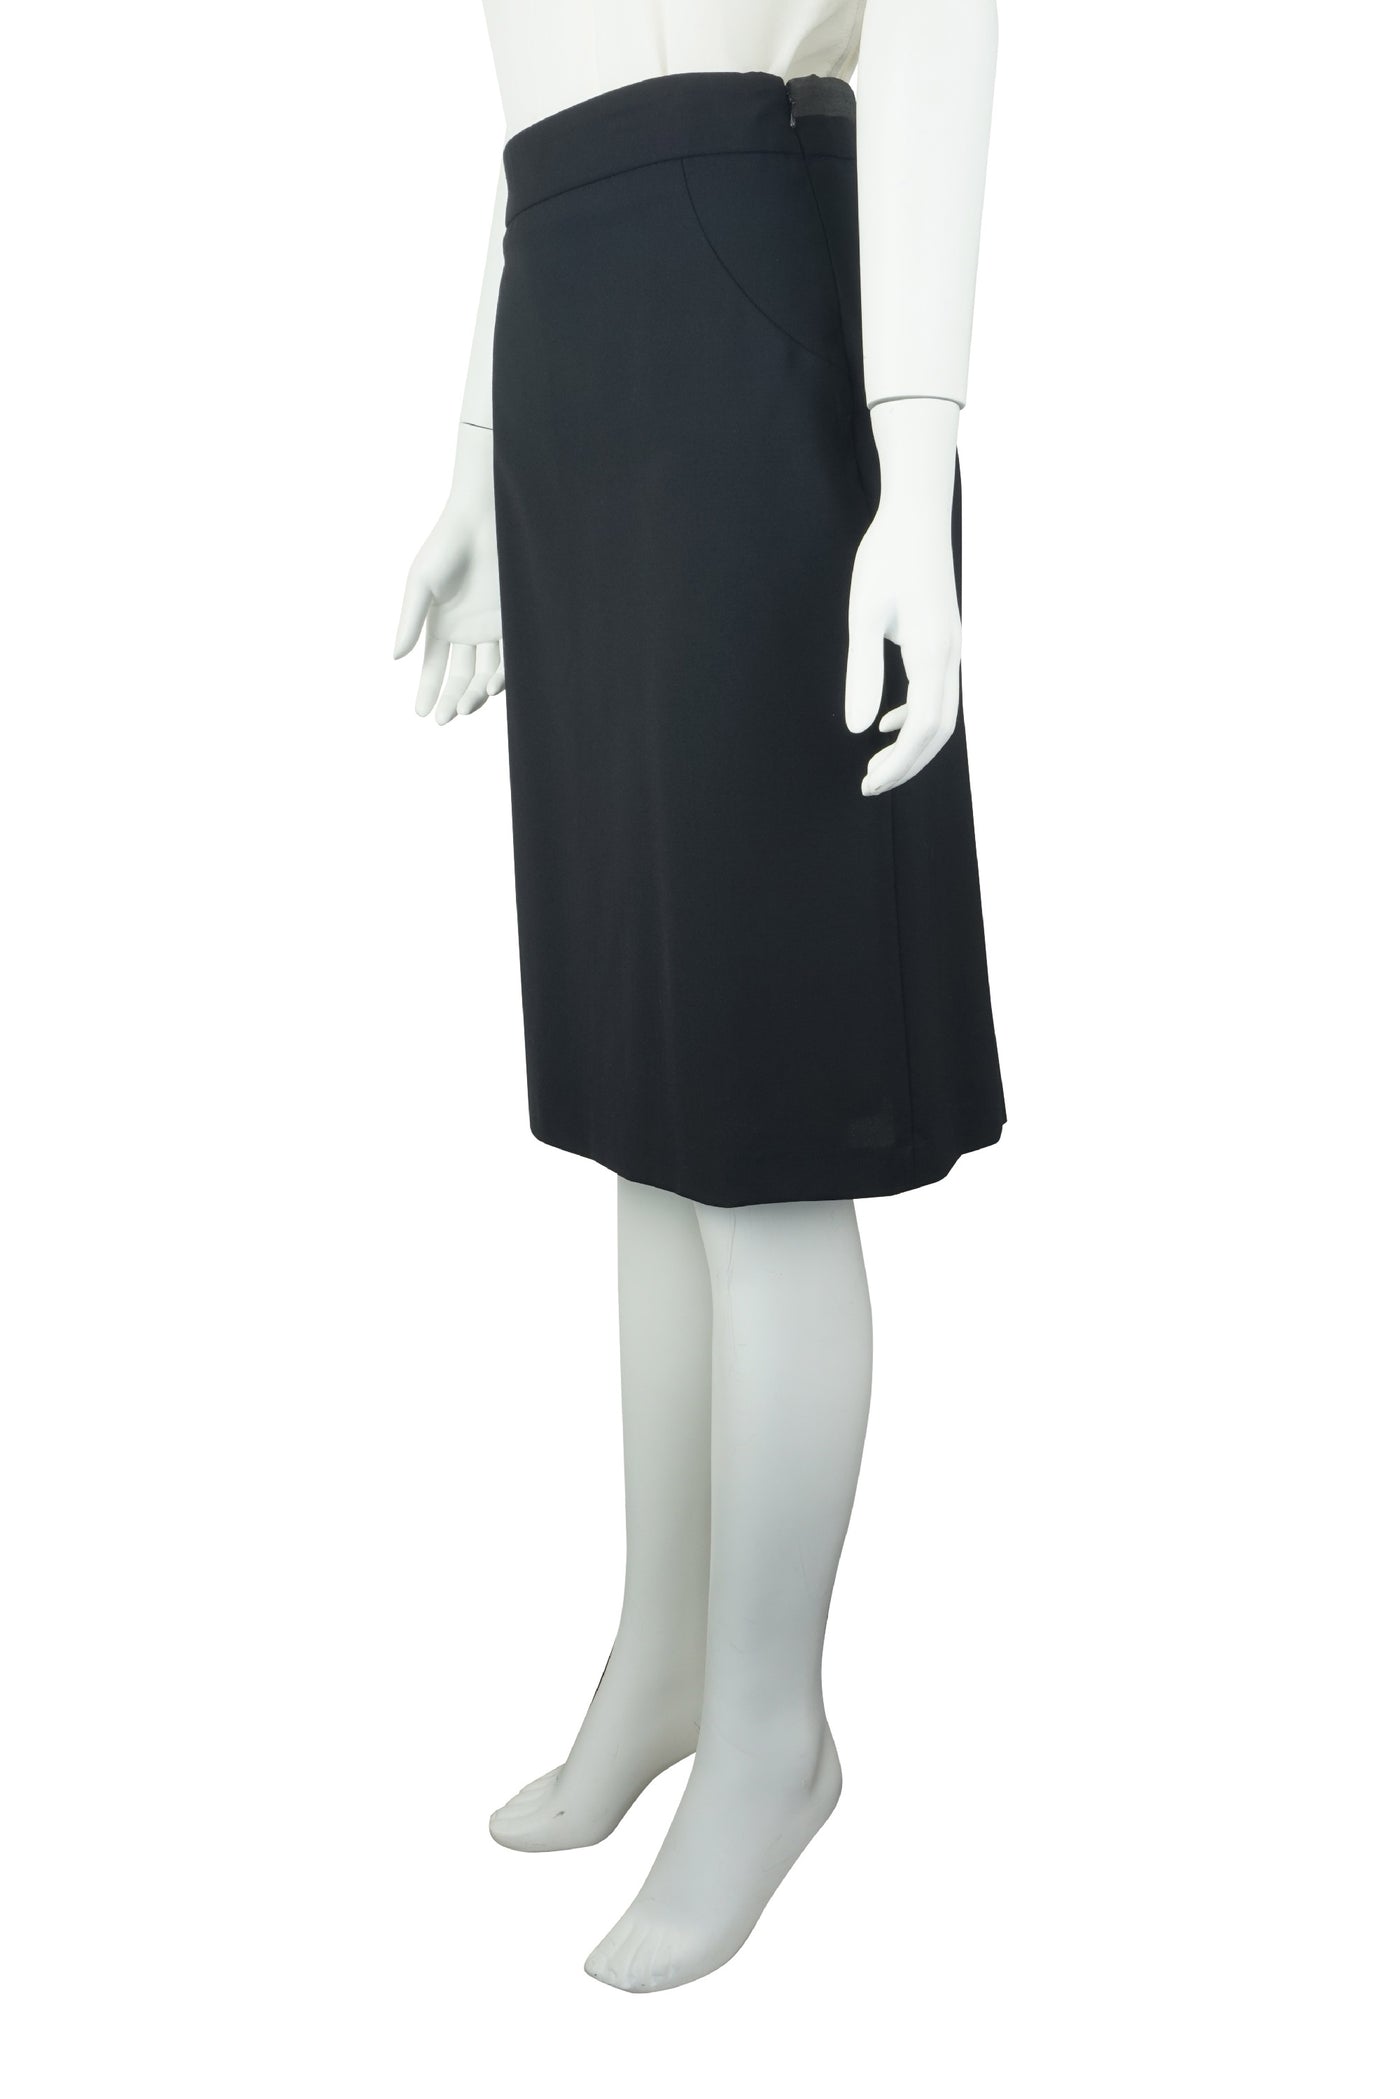 Black fishtail skirt